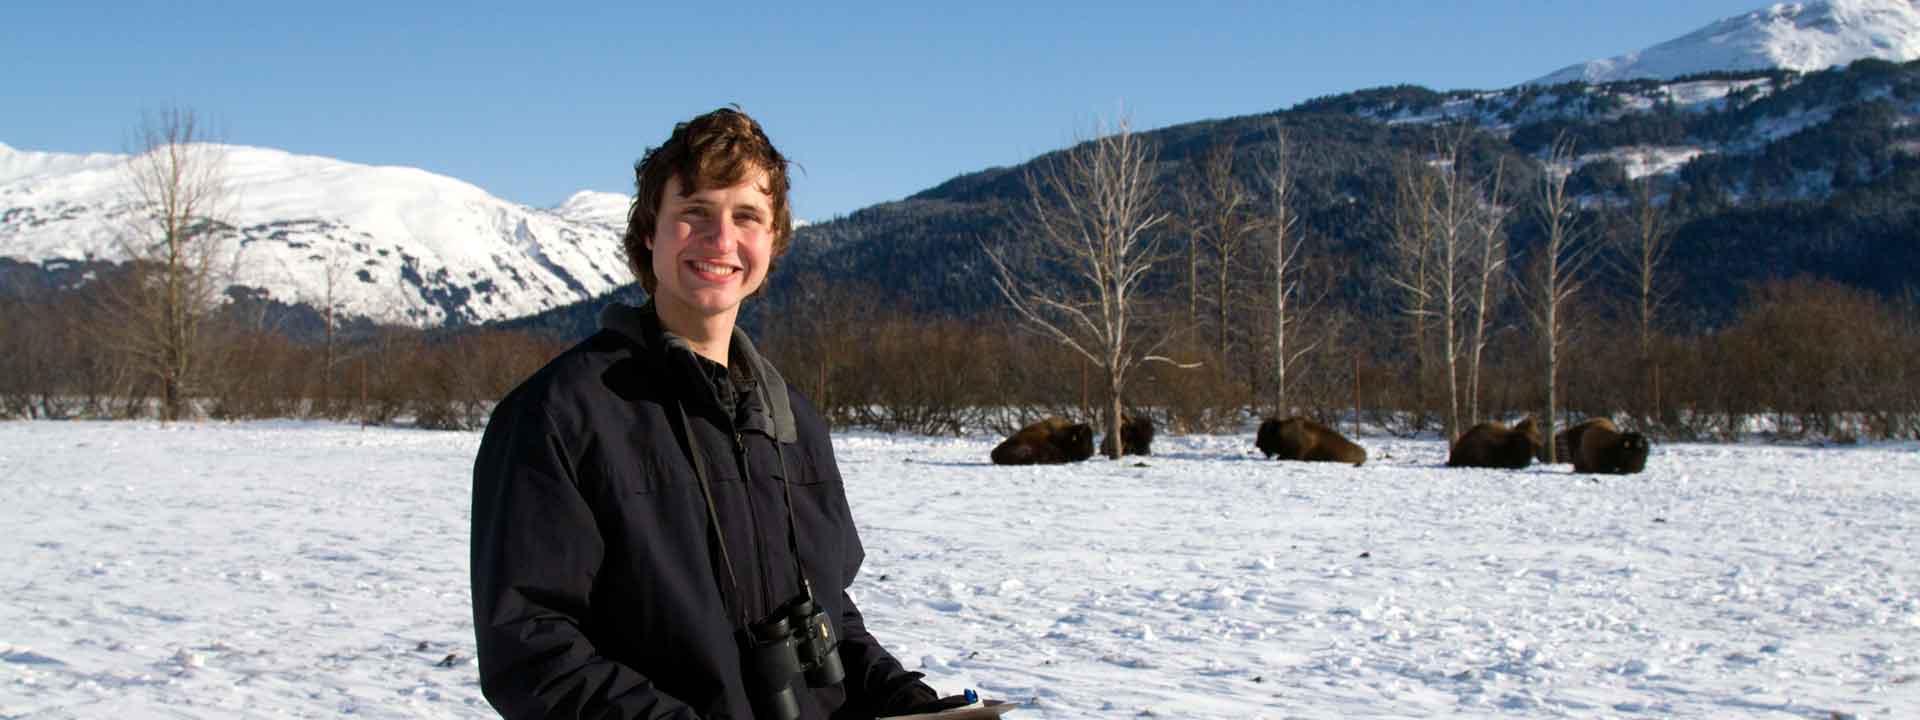 UAF student Luke Rogers studying bison